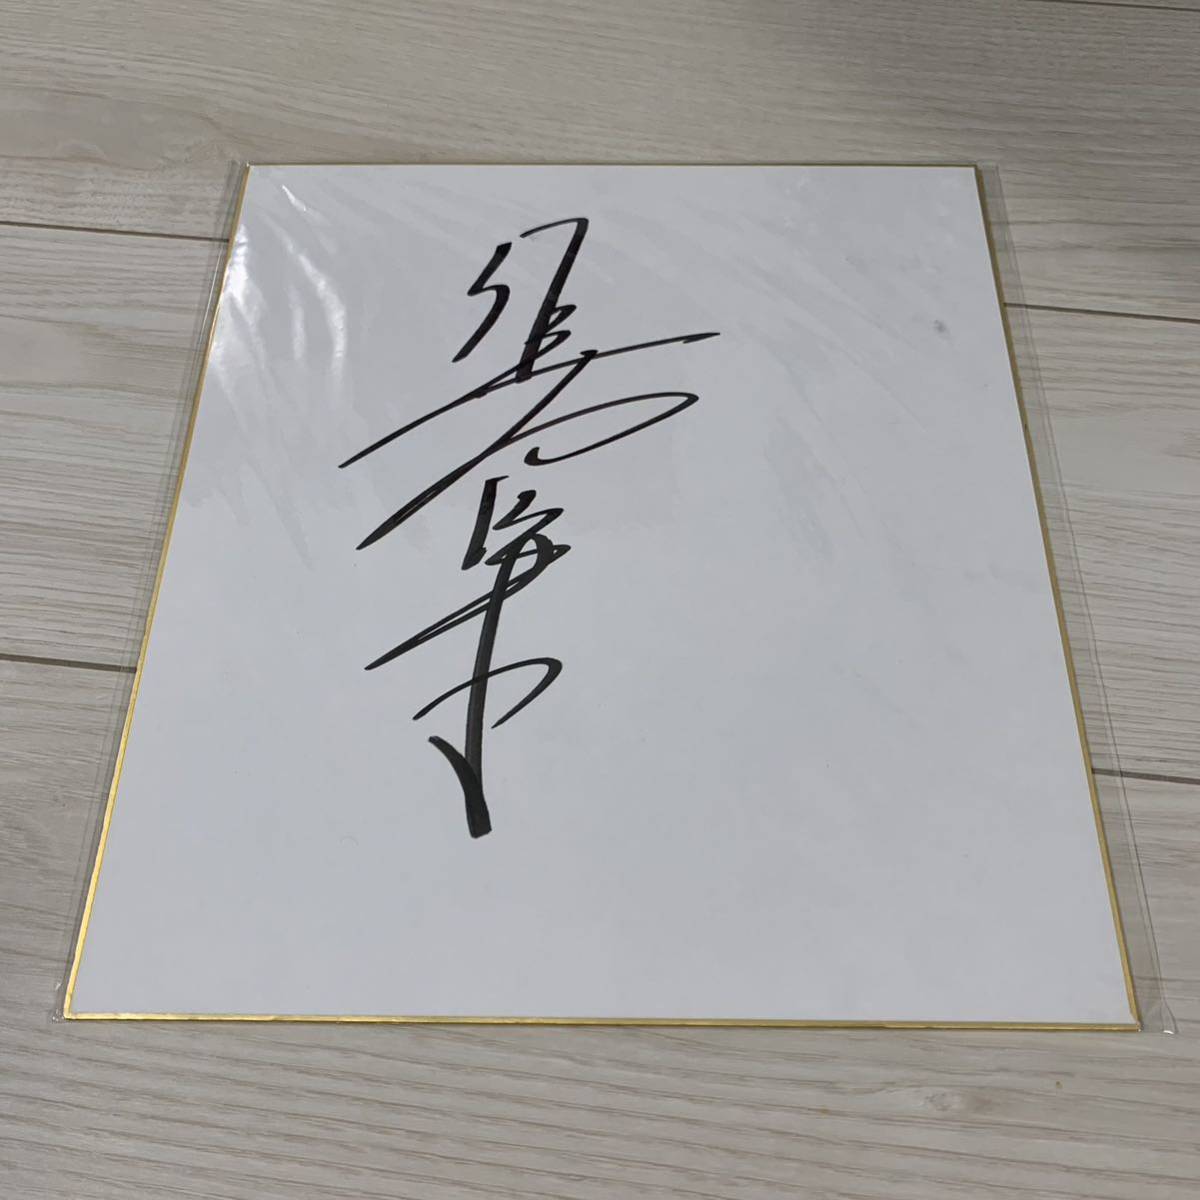  Sato Koichi autograph autograph square fancy cardboard 